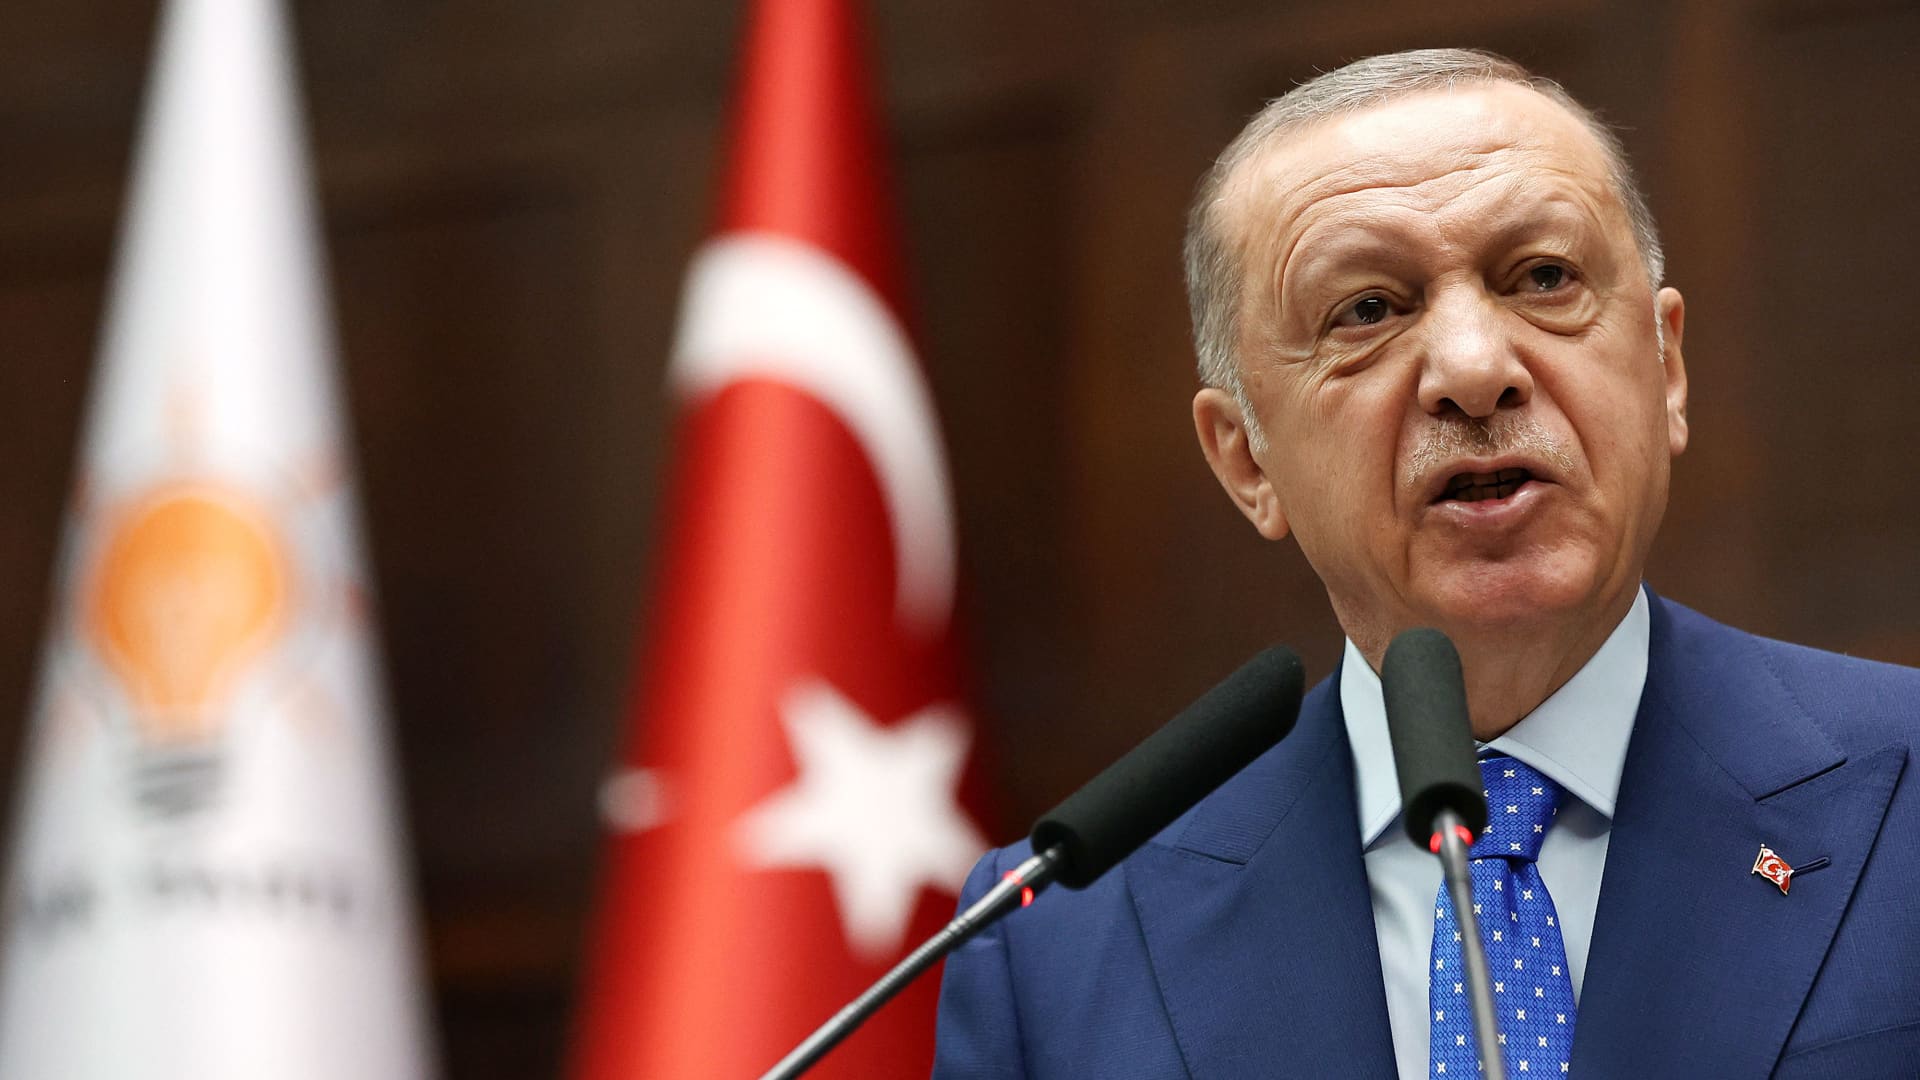 Turkey's President Erdogan seals election victory to enter third decade in power